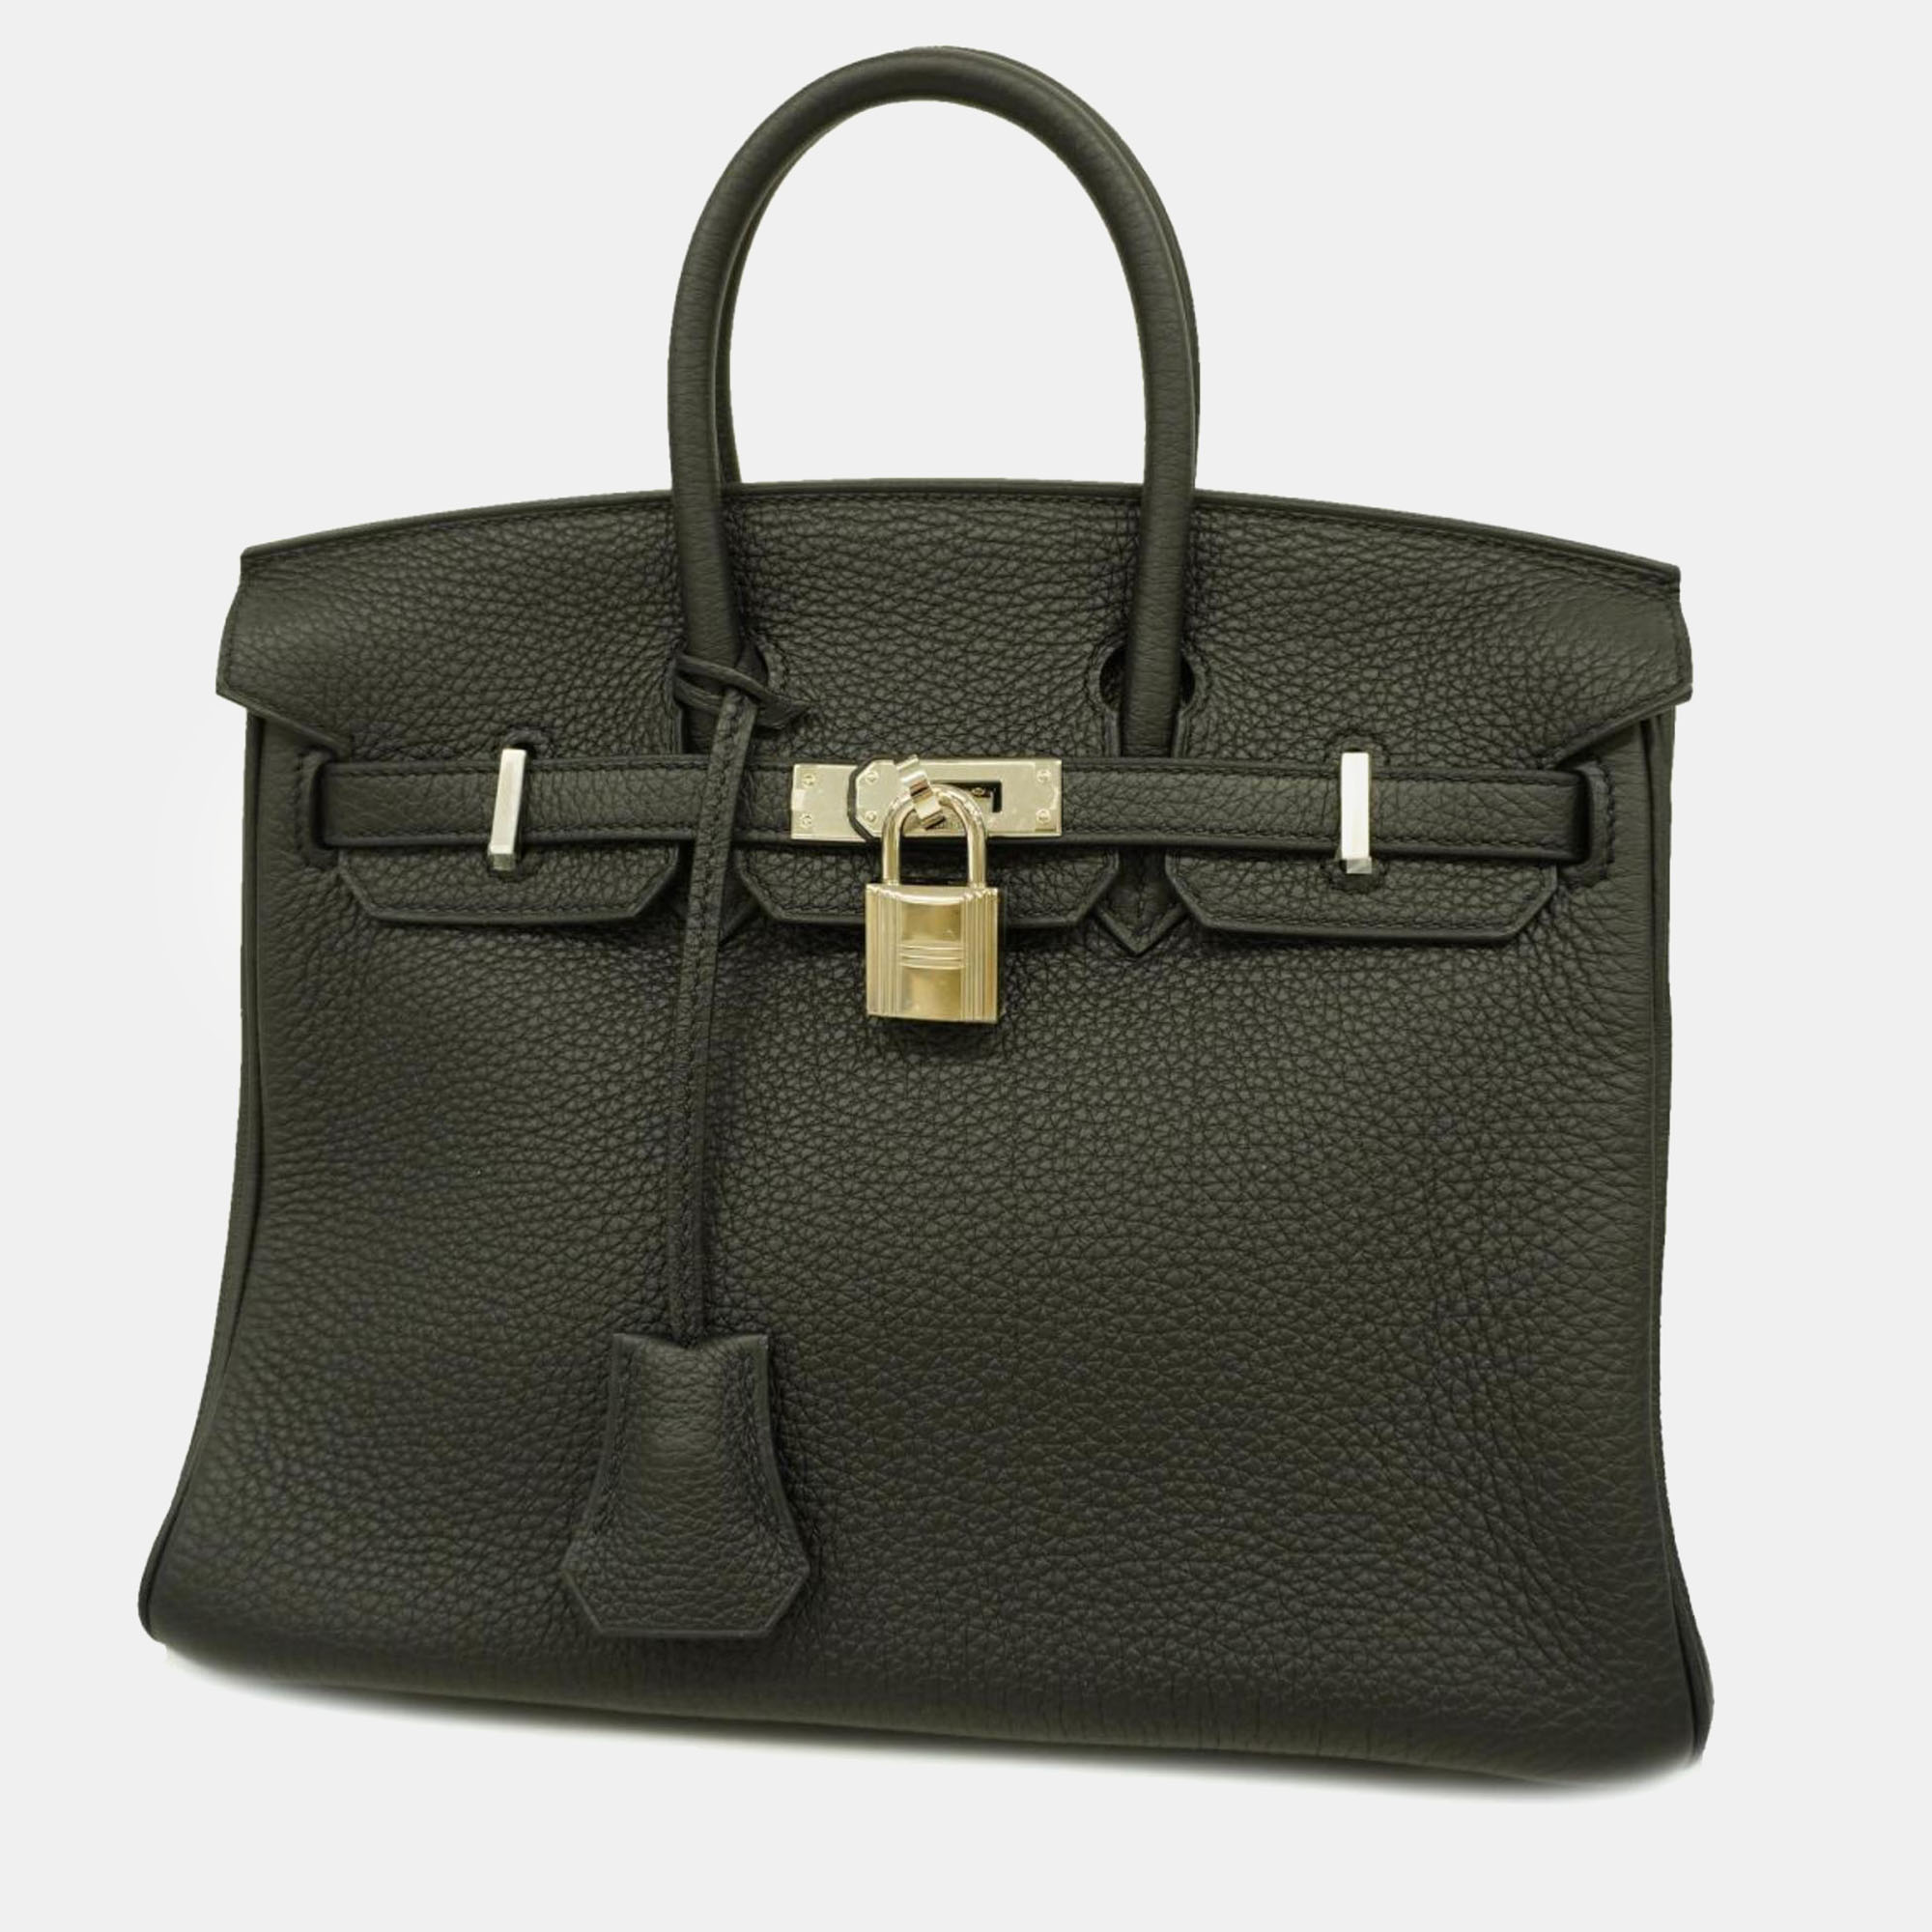 Pre-owned Hermes Black Togo Birkin Engraved Handbag